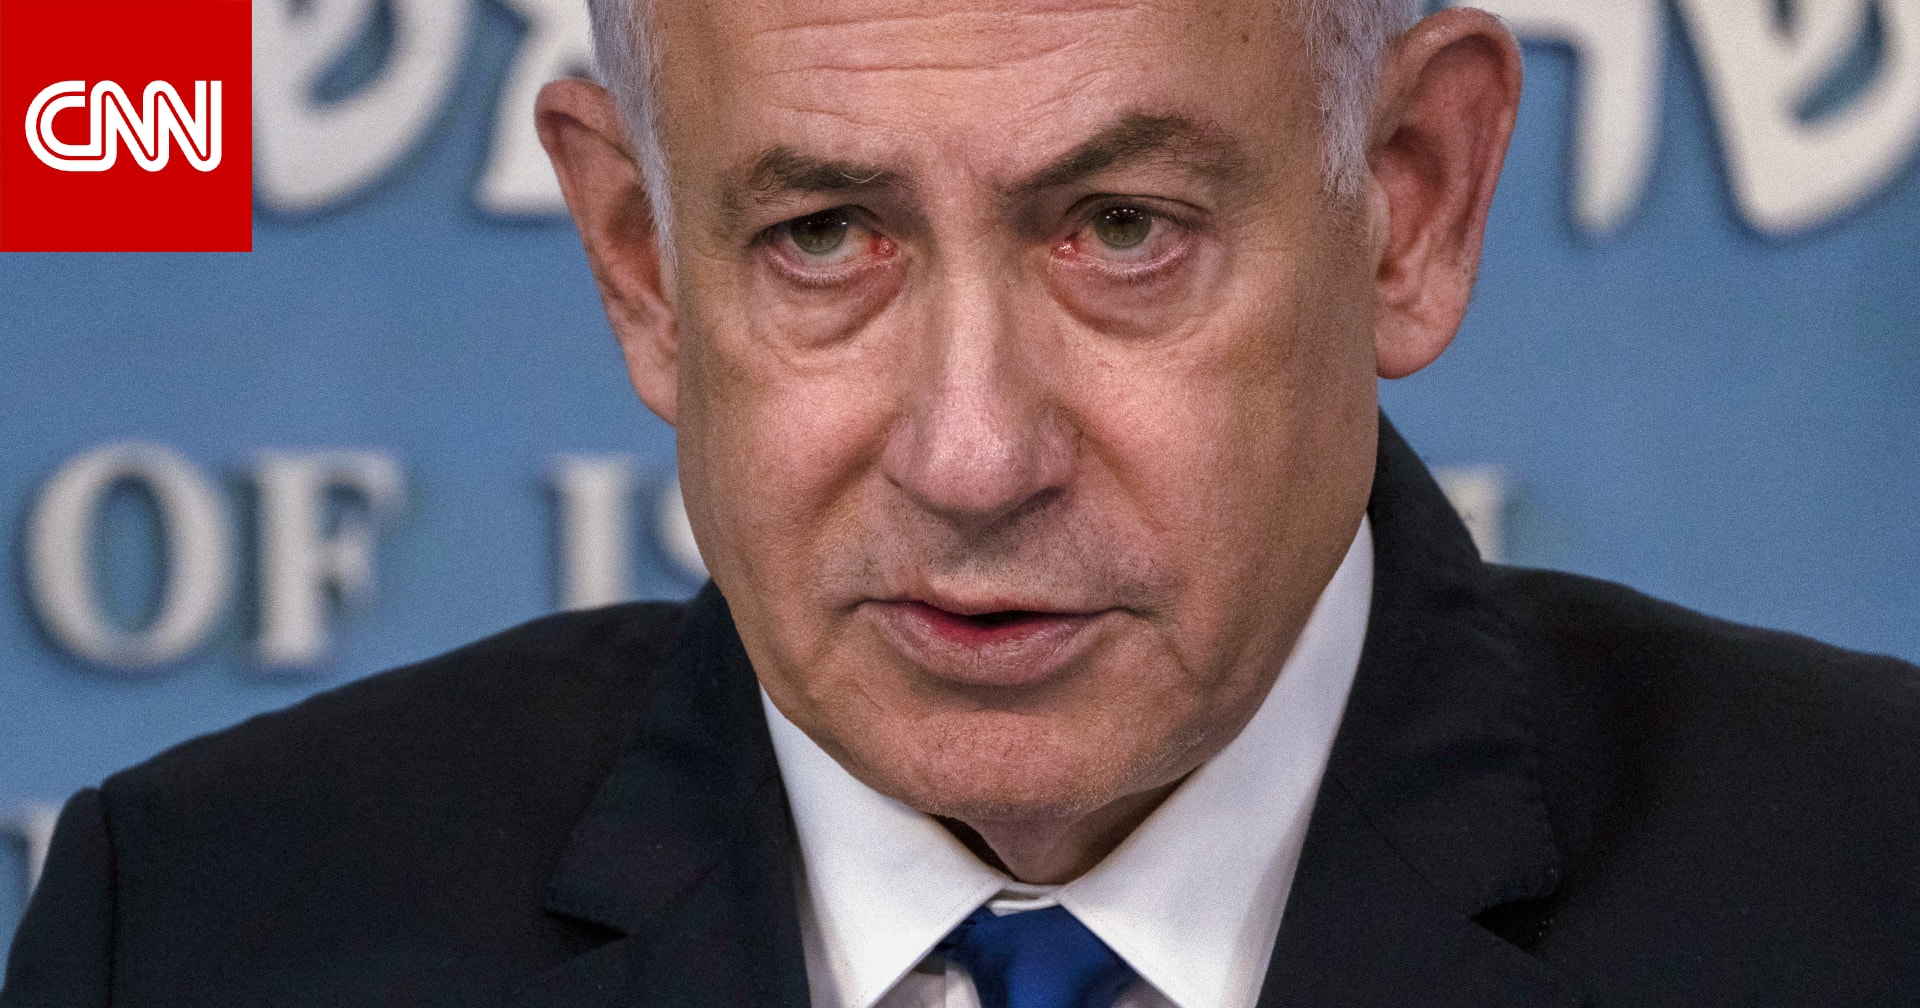 نتنياهو يلغي زيارة وفد إسرائيلي إلى واشنطن بعد امتناع الولايات المتحدة عن التصويت بمجلس الأمن